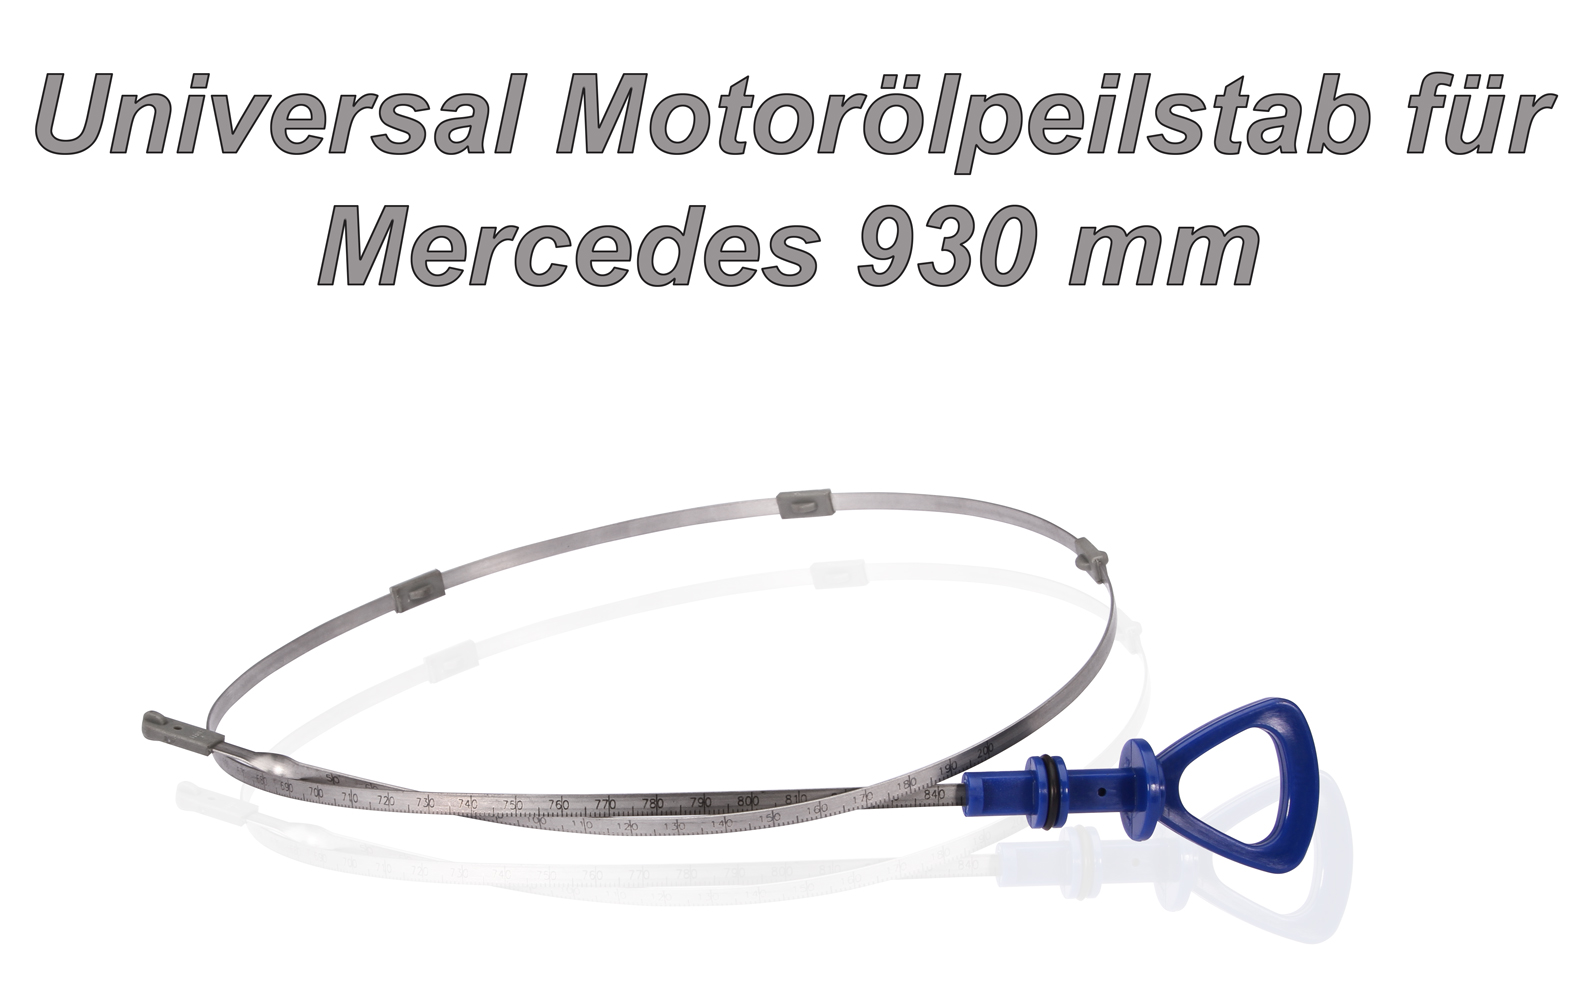 Universal blauer Motorölpeilstab für Mercedes